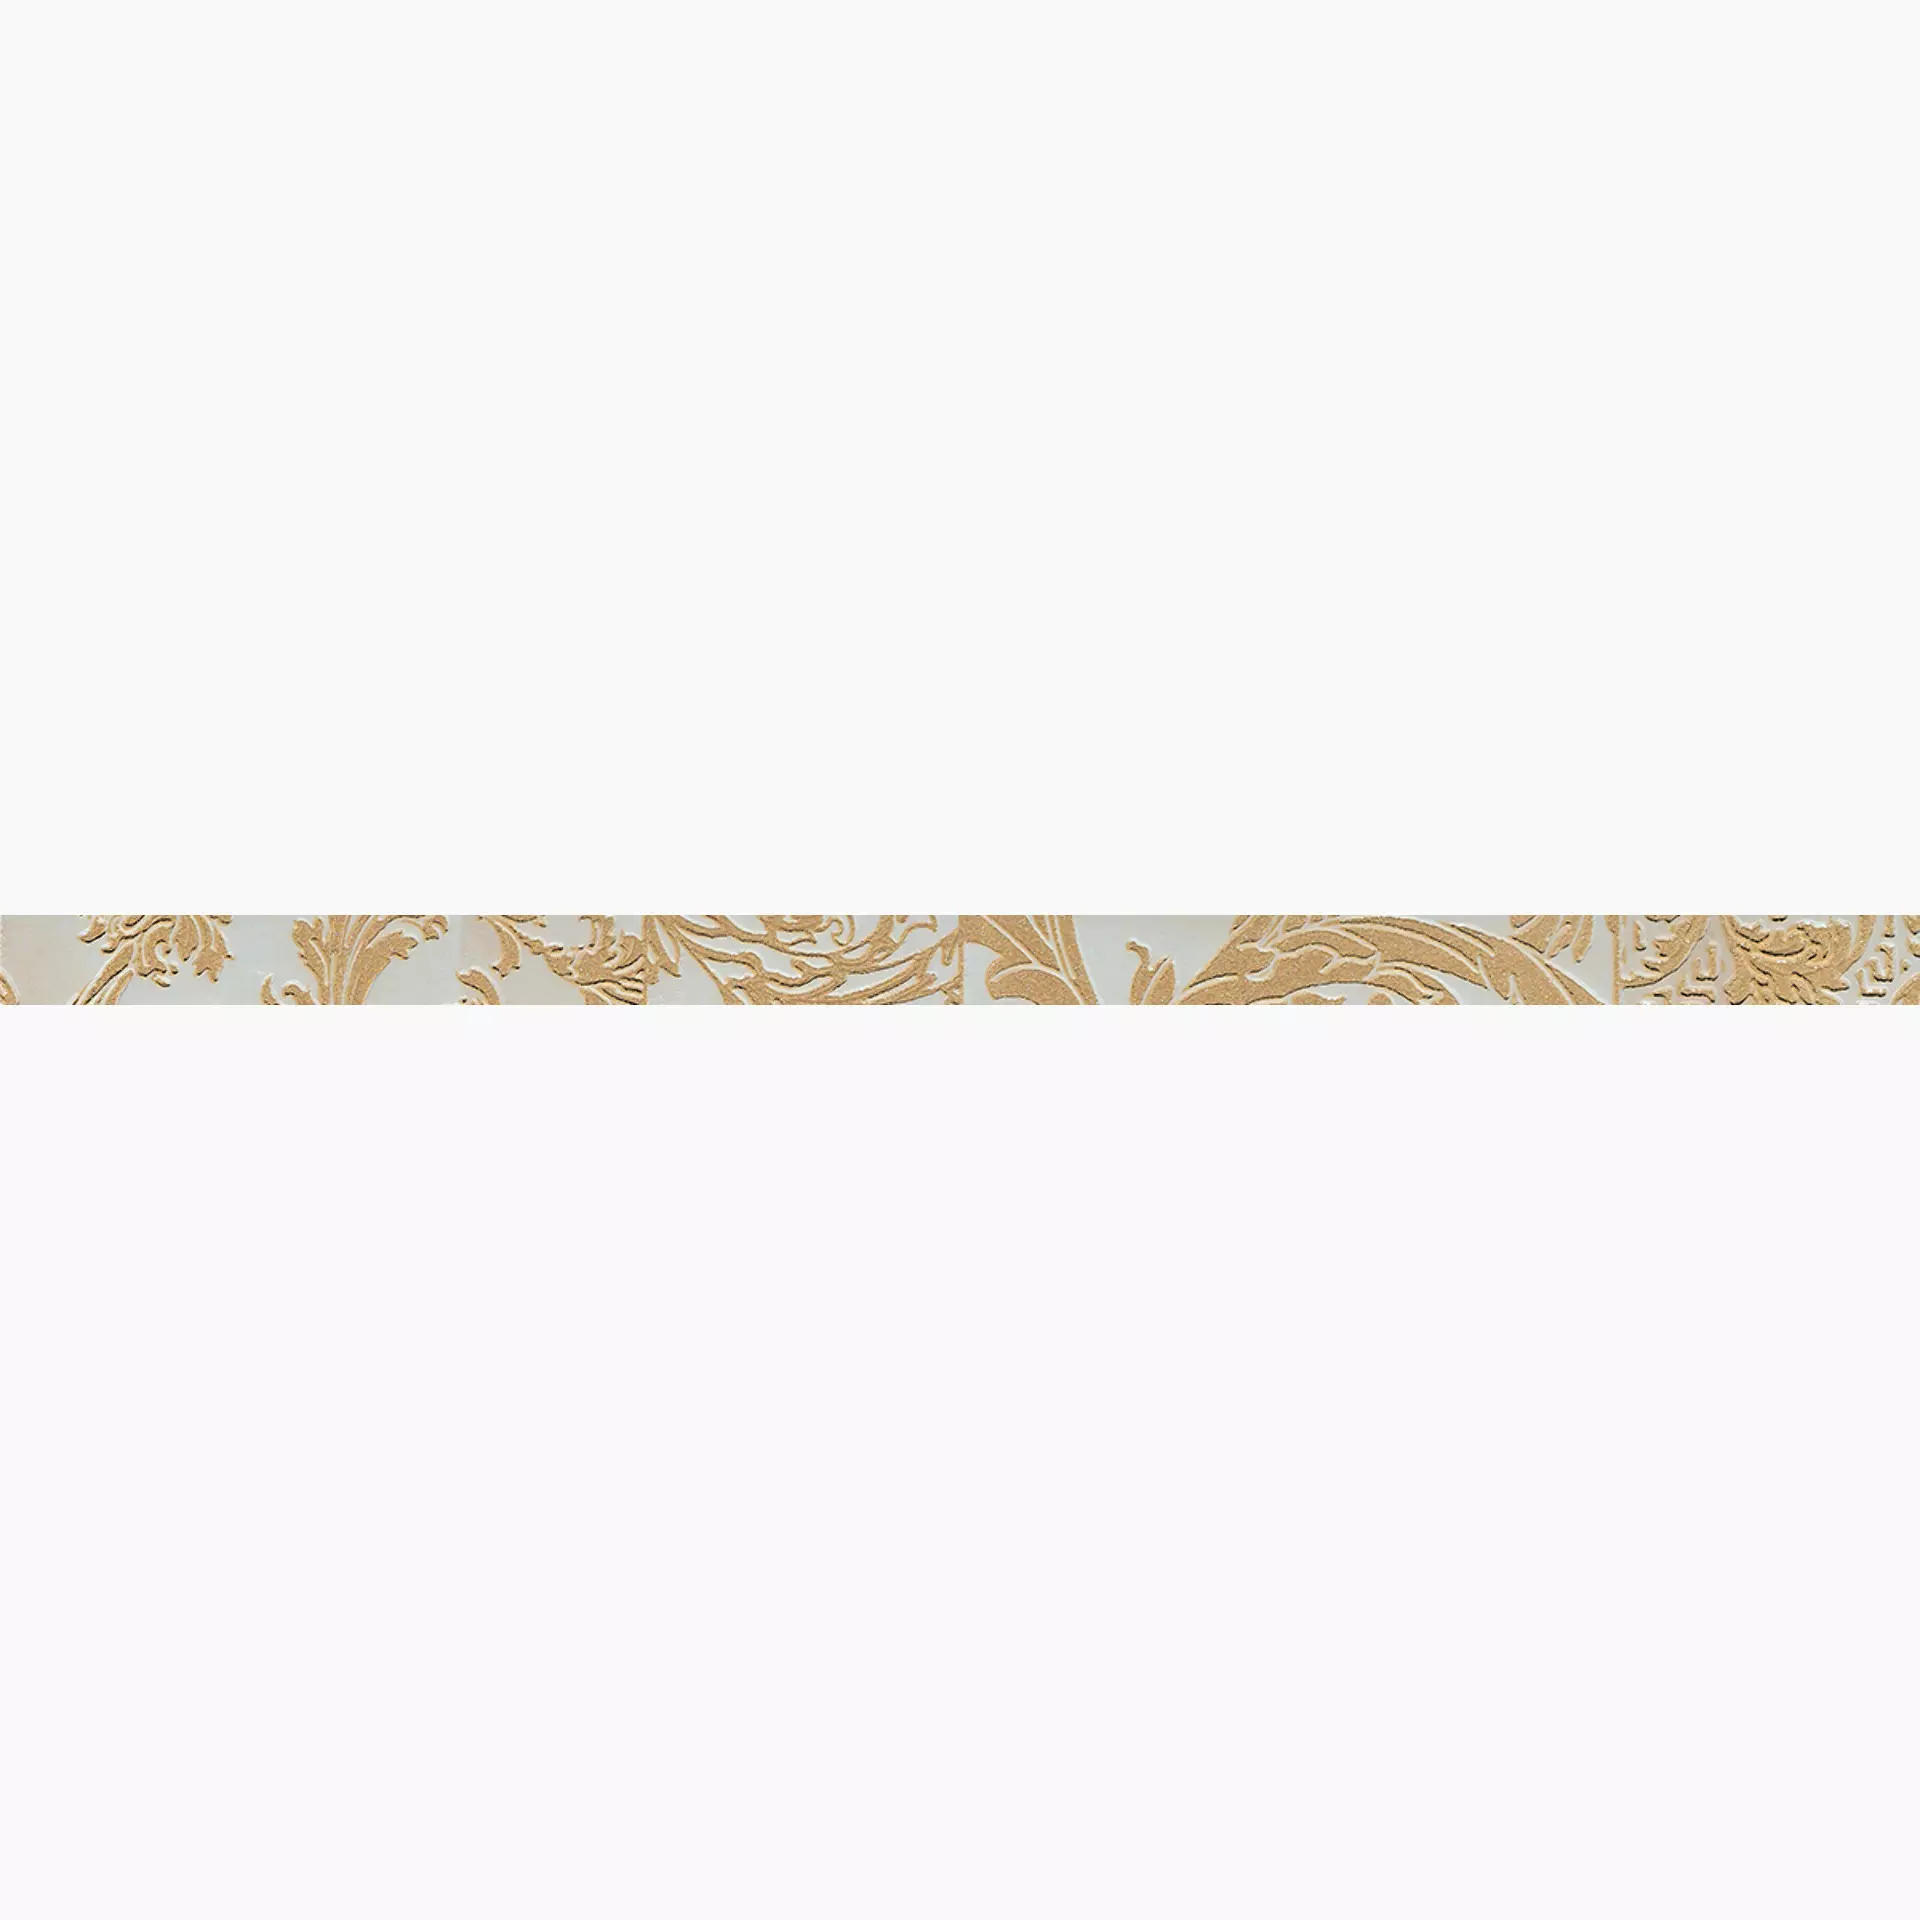 Versace Marble (Gar) Beige Lux Beige G0240744 2,7x58,5cm Band Patchwork rektifiziert 9,5mm